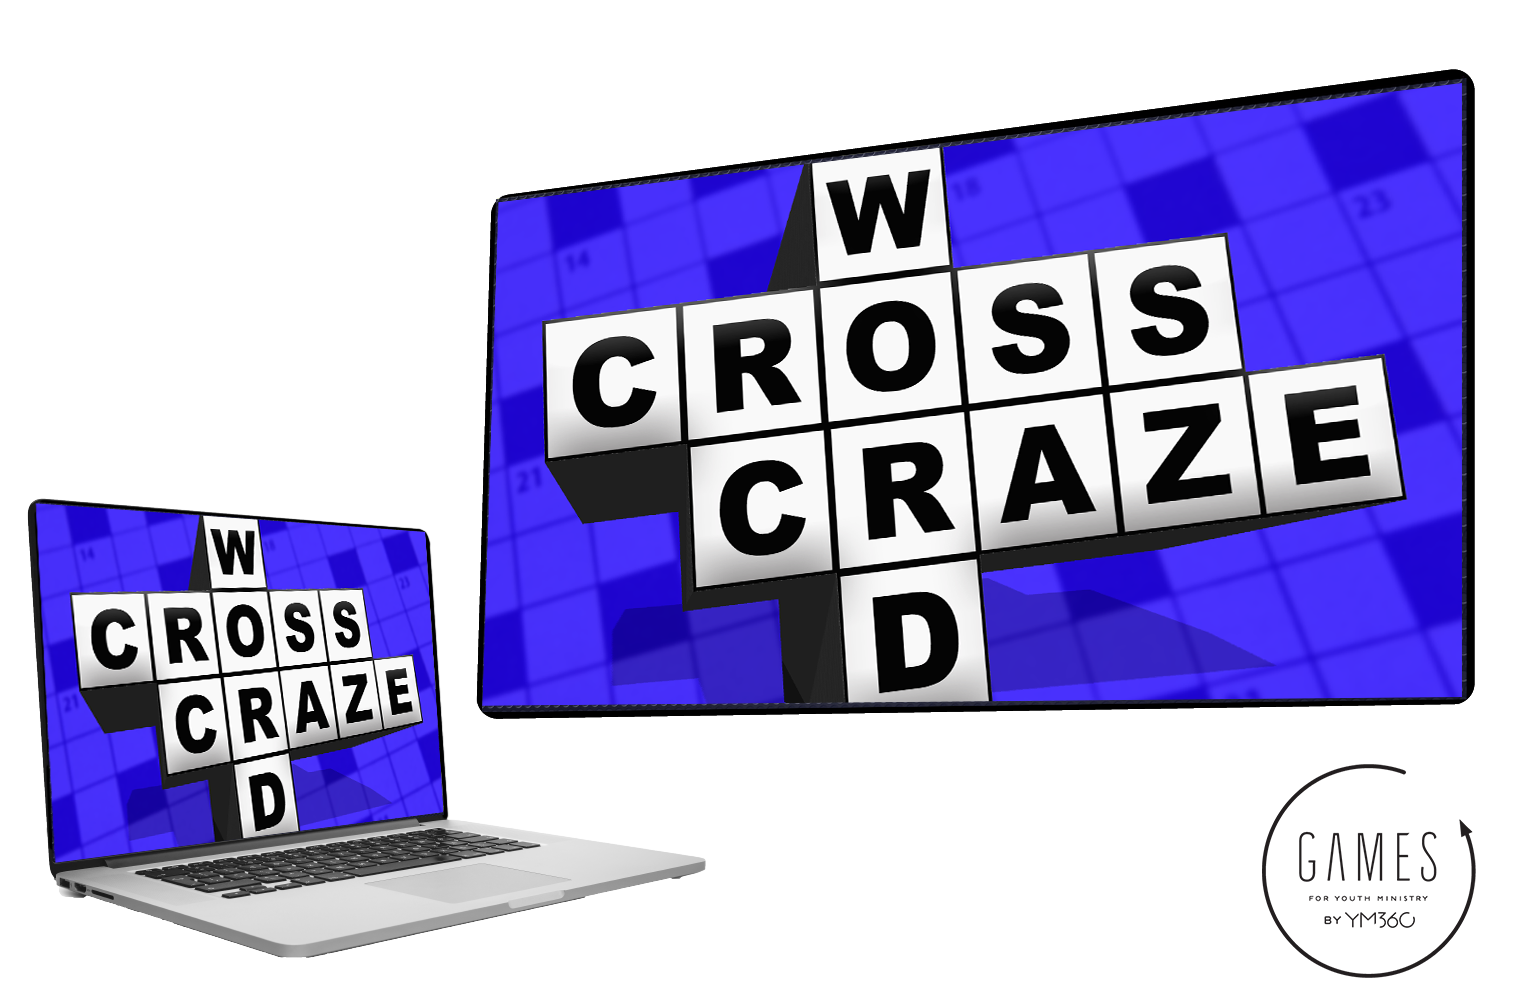 Crossword Craze